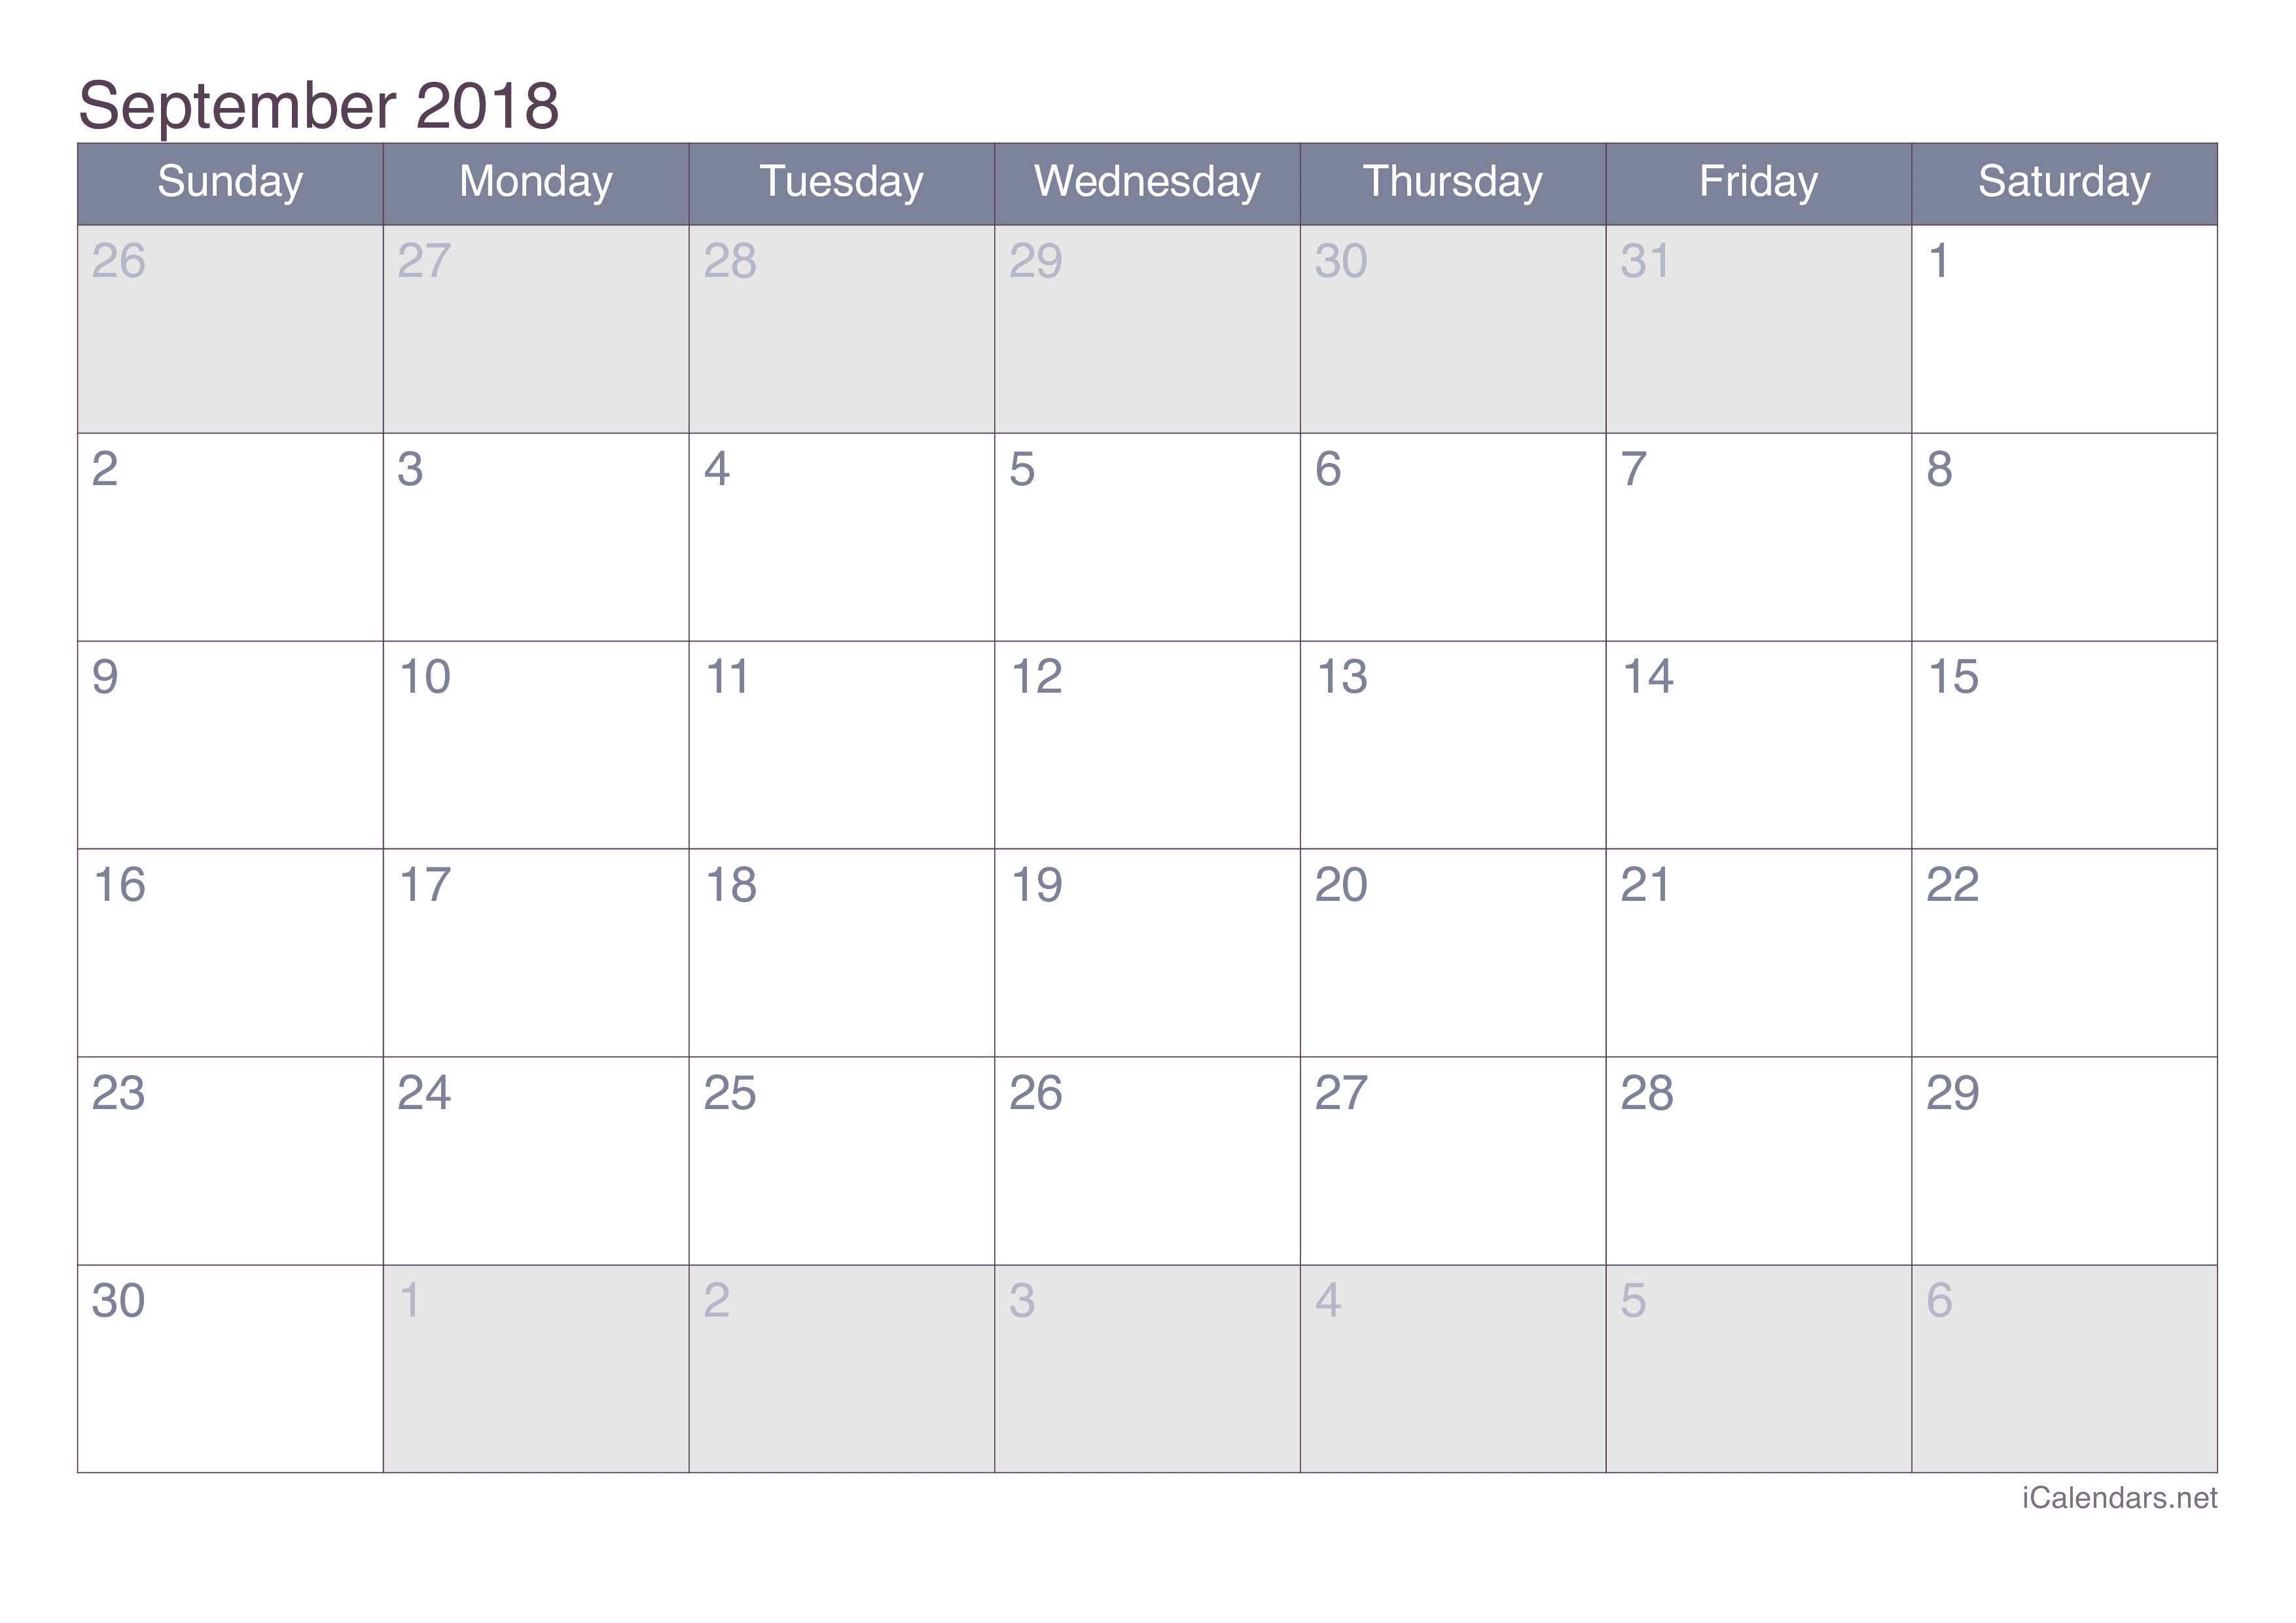 September 2018 Printable Calendar icalendars net